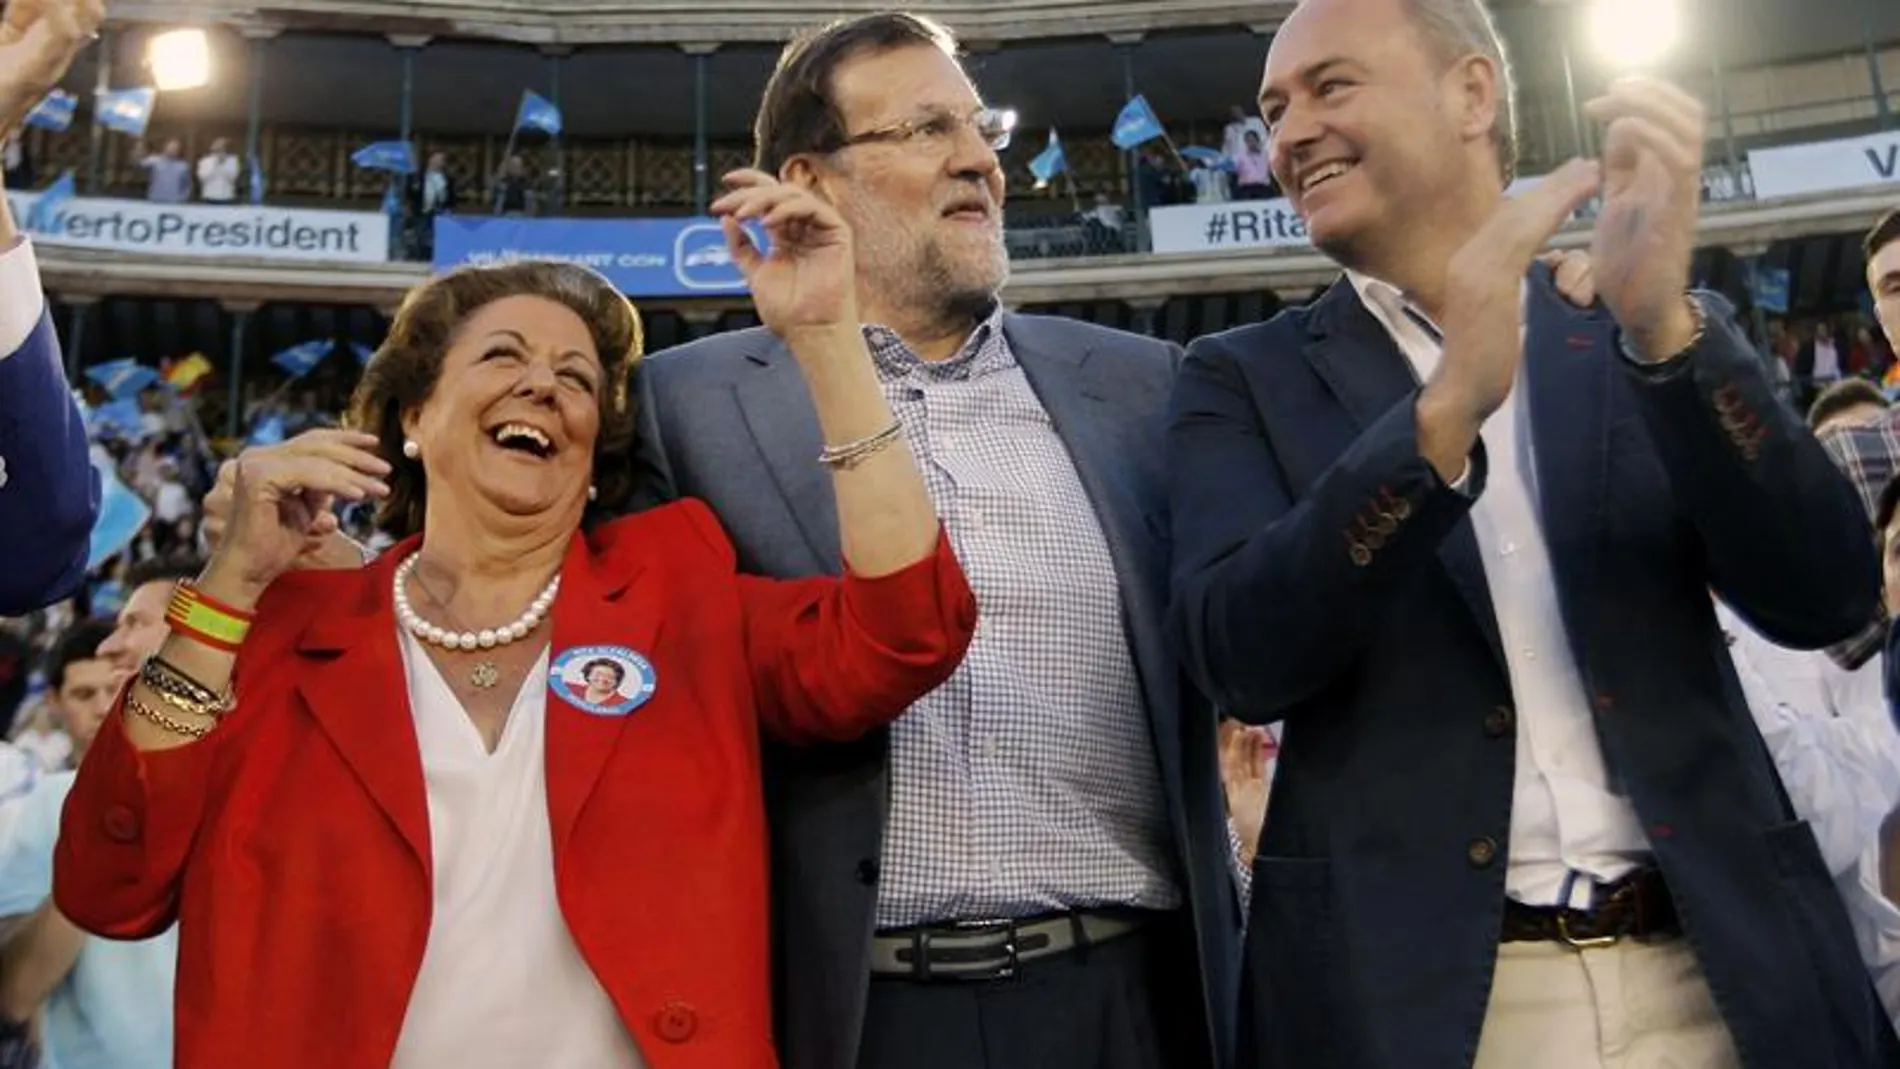 Rita Barberá, Mariano Rajoy y Alberto Fabra en acto electoral